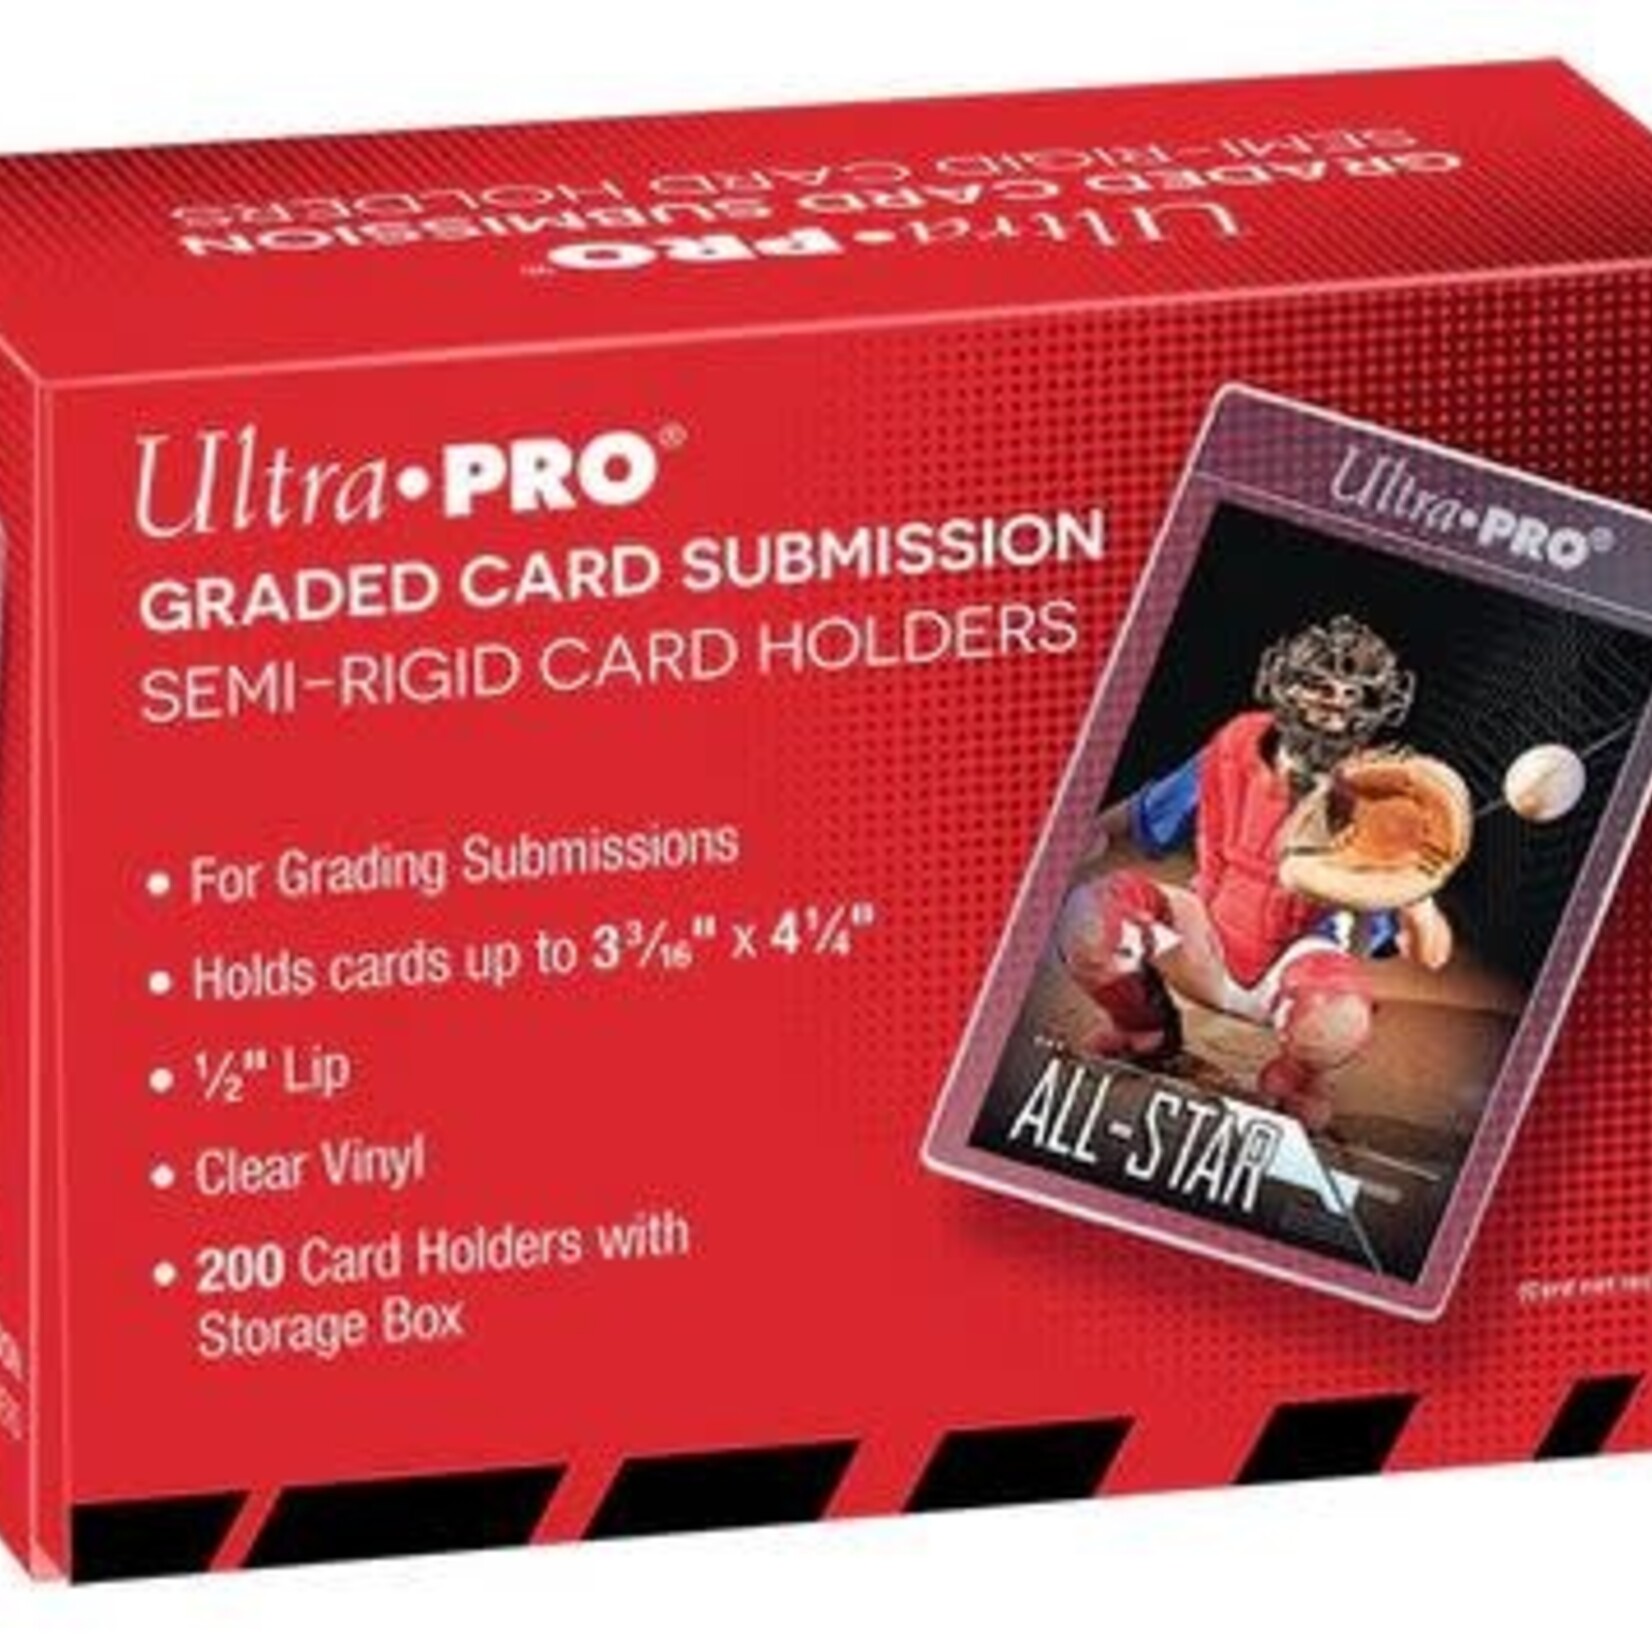 Ultra Pro Ultra Pro 1/2" Lip Semi-Rigid Tall Card Holders (200ct)